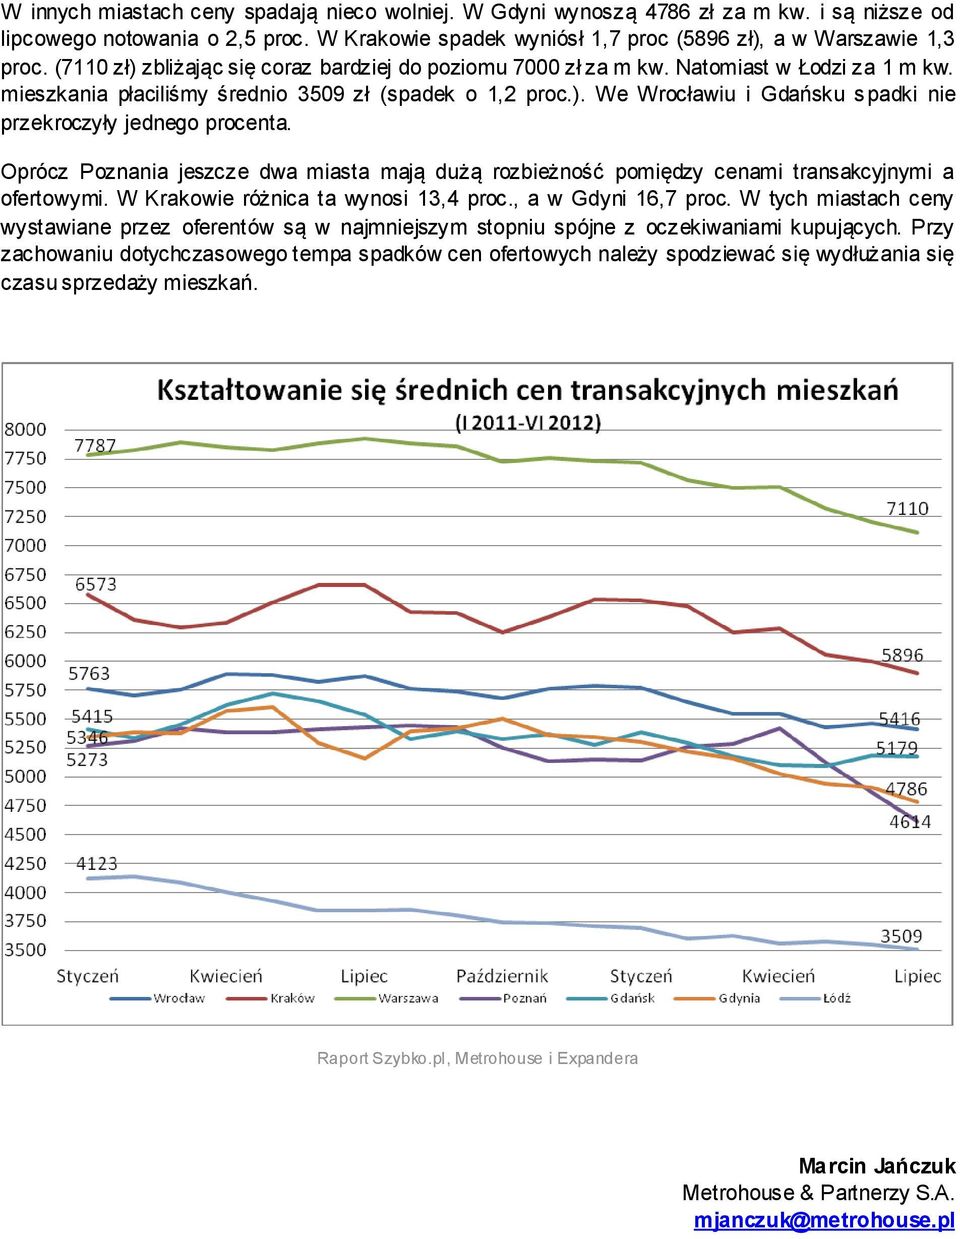 Oprócz Poznania jeszcze dwa miasta mają dużą rozbieżność pomiędzy cenami transakcyjnymi a ofertowymi. W Krakowie różnica ta wynosi 13,4 proc., a w Gdyni 16,7 proc.